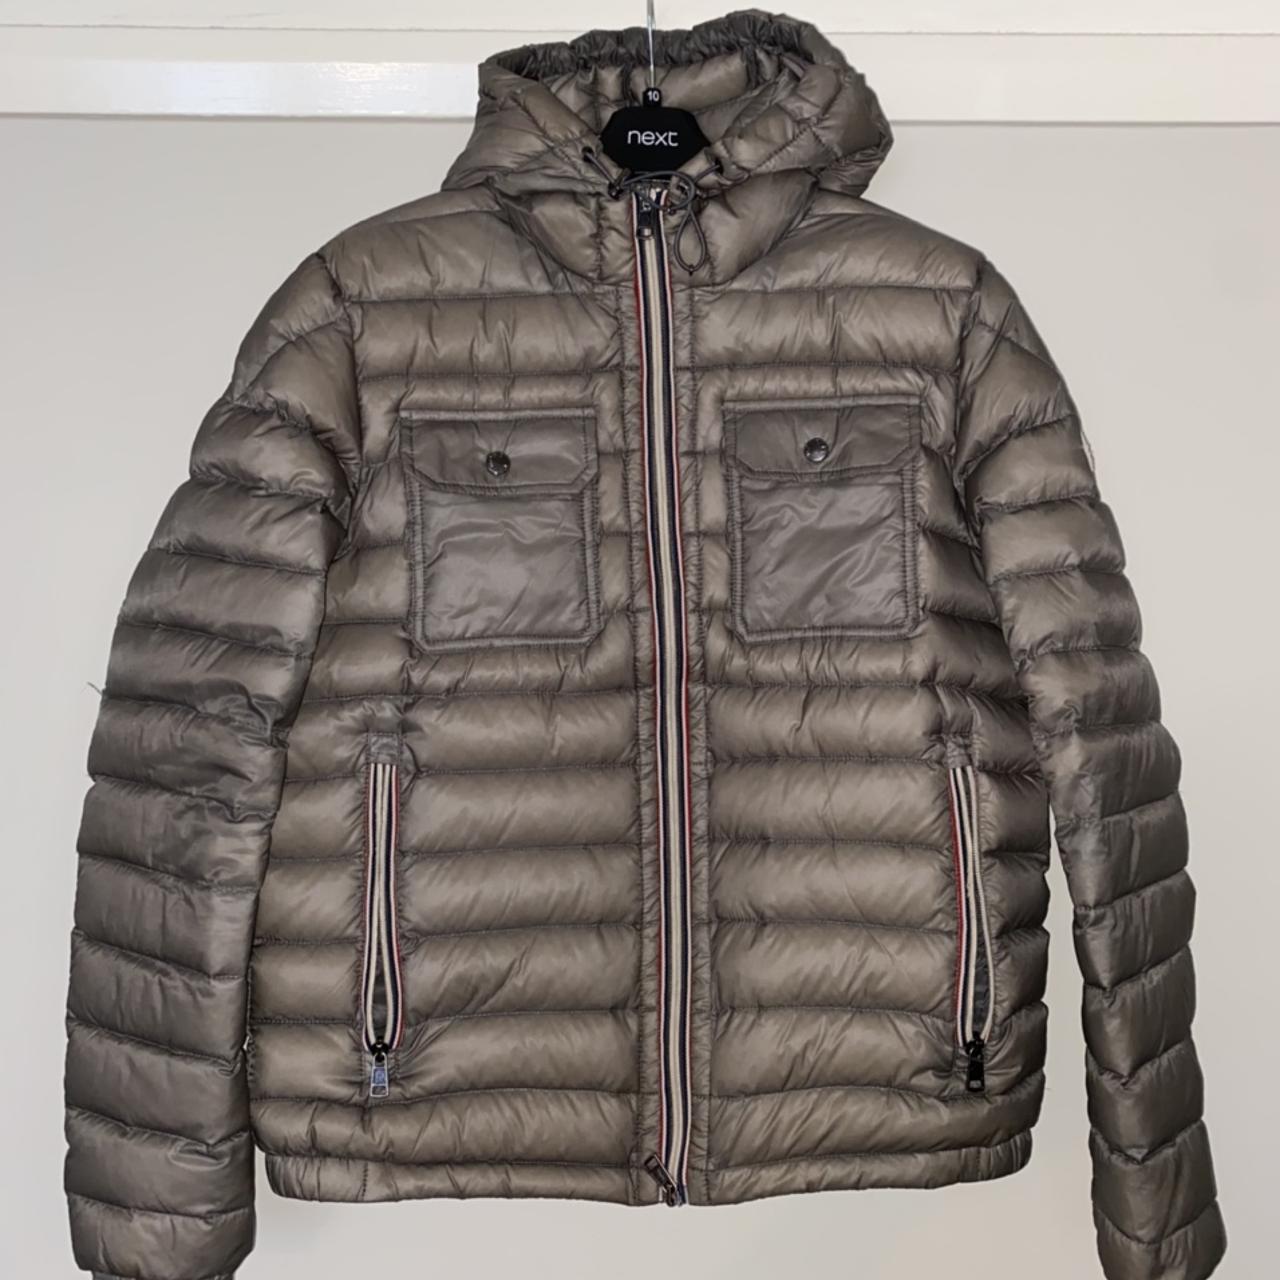 SOLD! Rare moncler padded jacket Size 3 (fits... - Depop